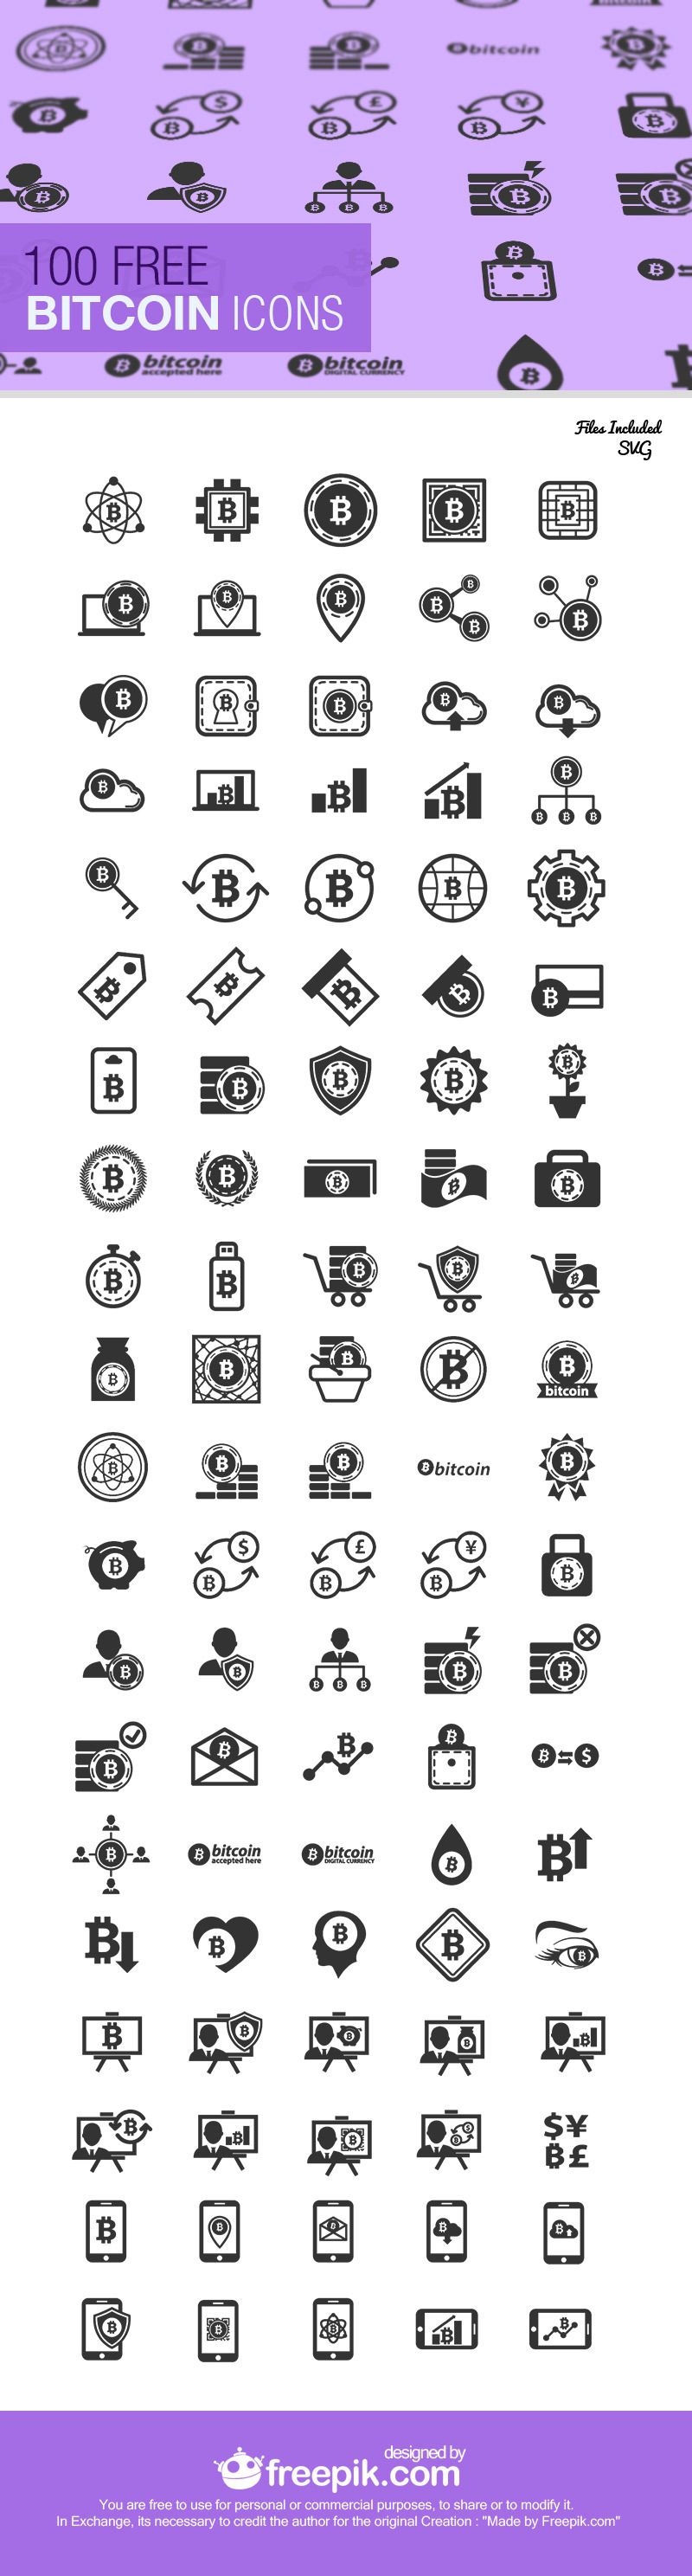 Colección de iconos de 100 Bitcoin